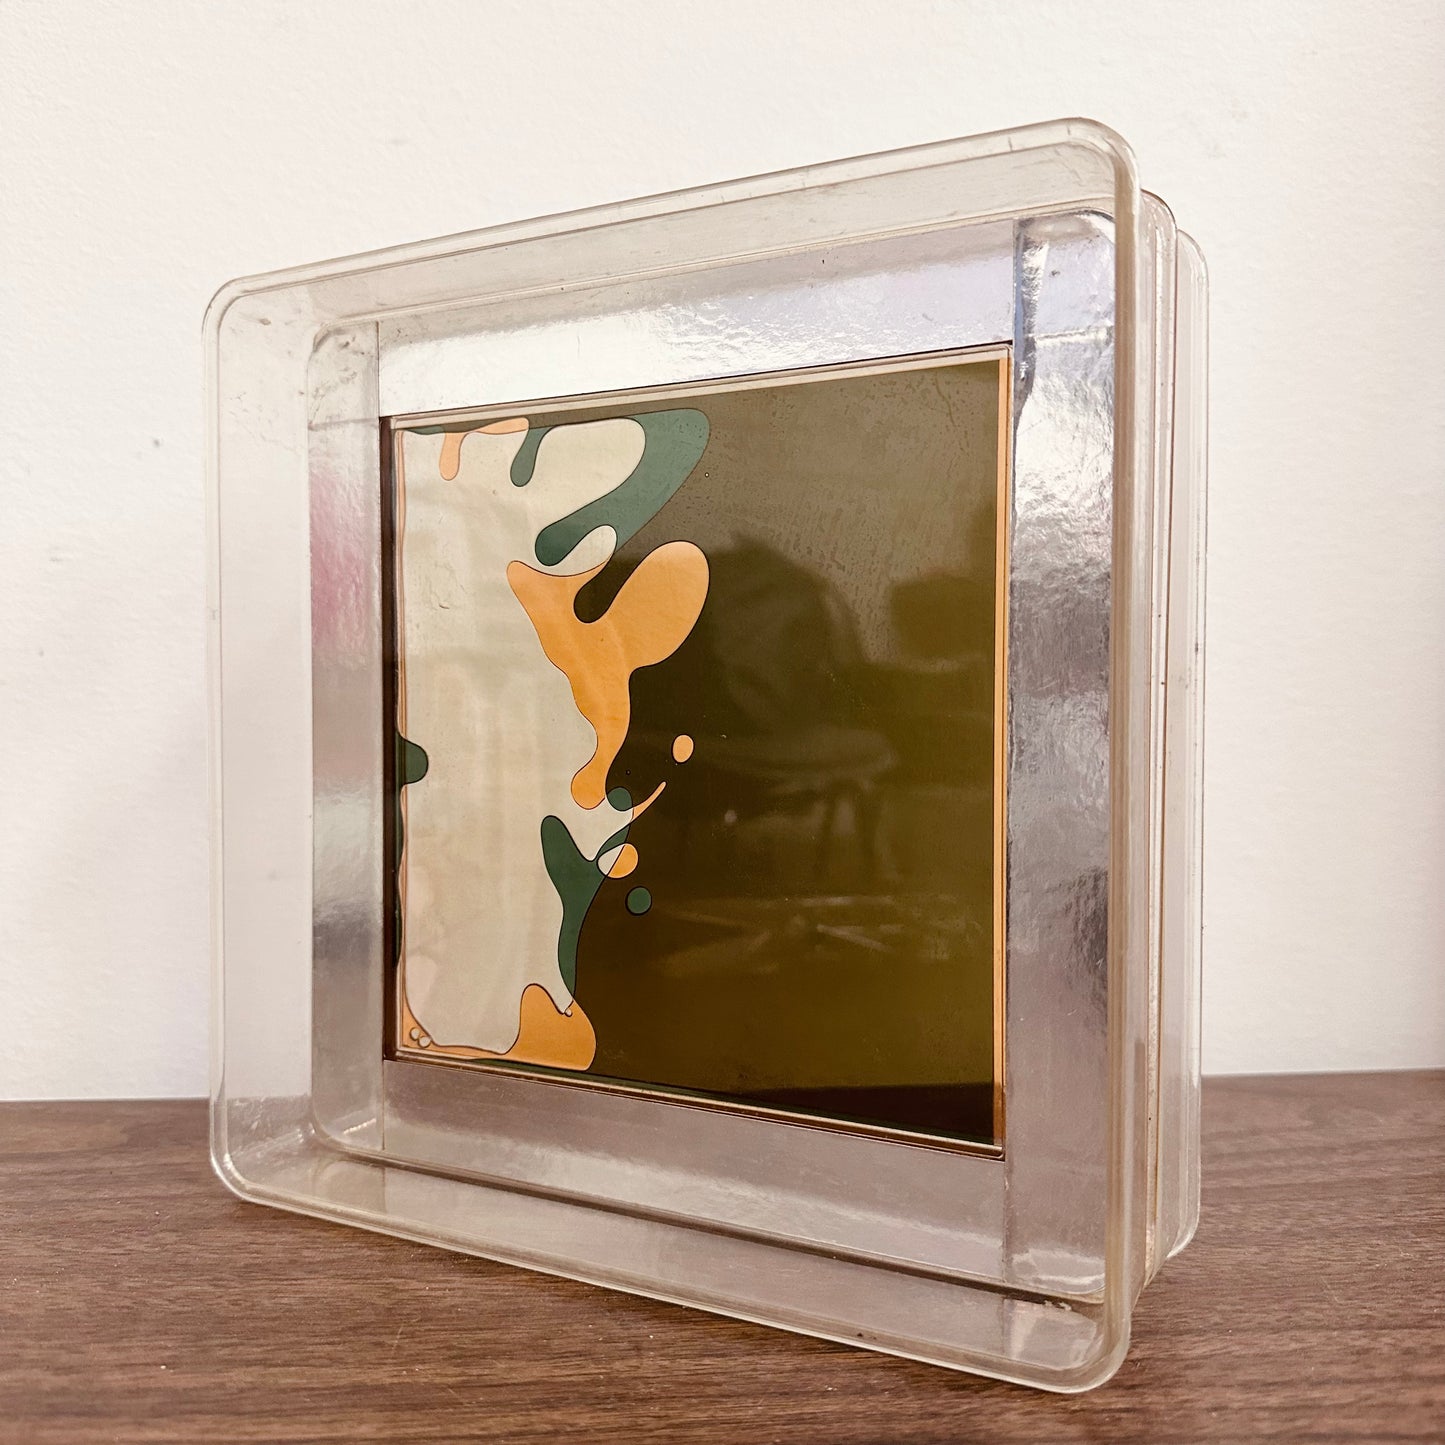 ARTEK 8" COLOR WINDOW PLASTIC LIQUID MOTION DESK TOY OP ART 1970S